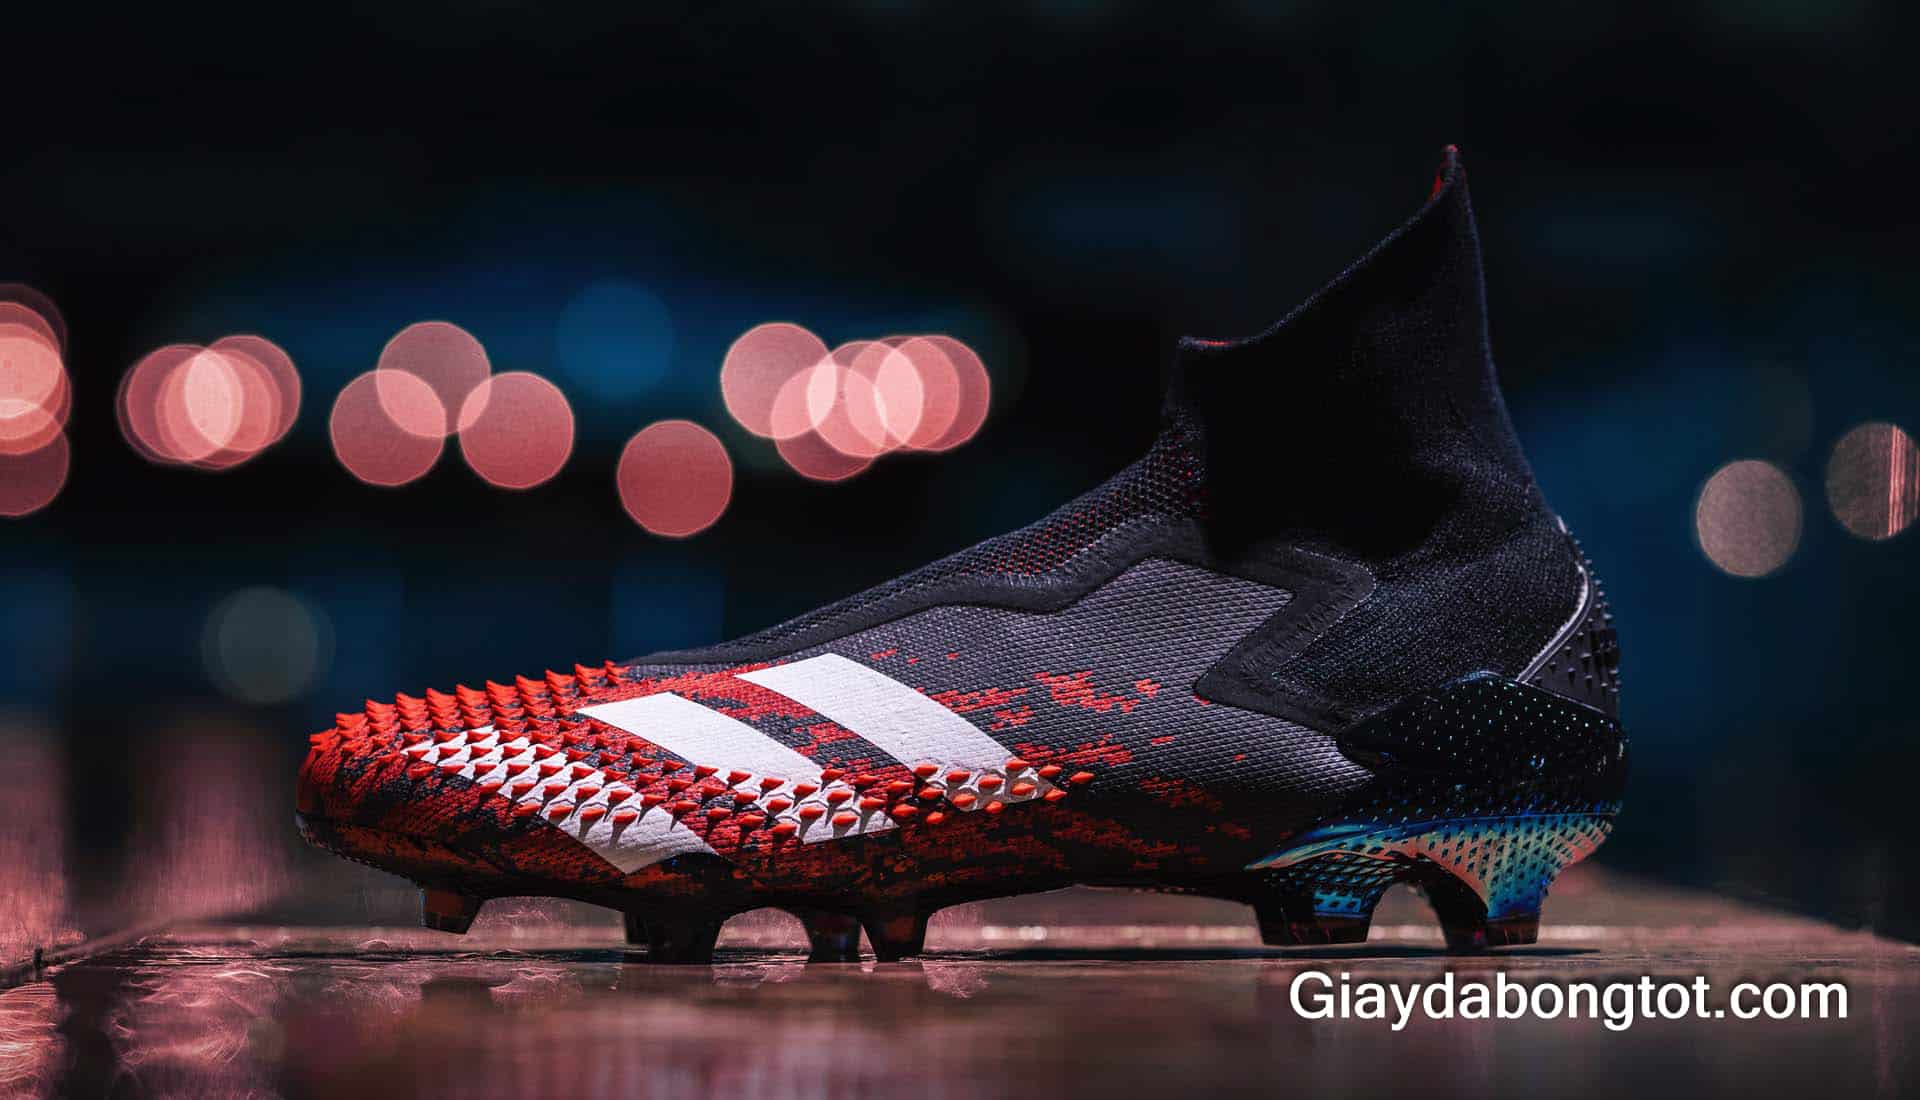 Giày Adidas Predator là một tượng đài giày đá bóng kiểm soát bóng chuyên nghiệp